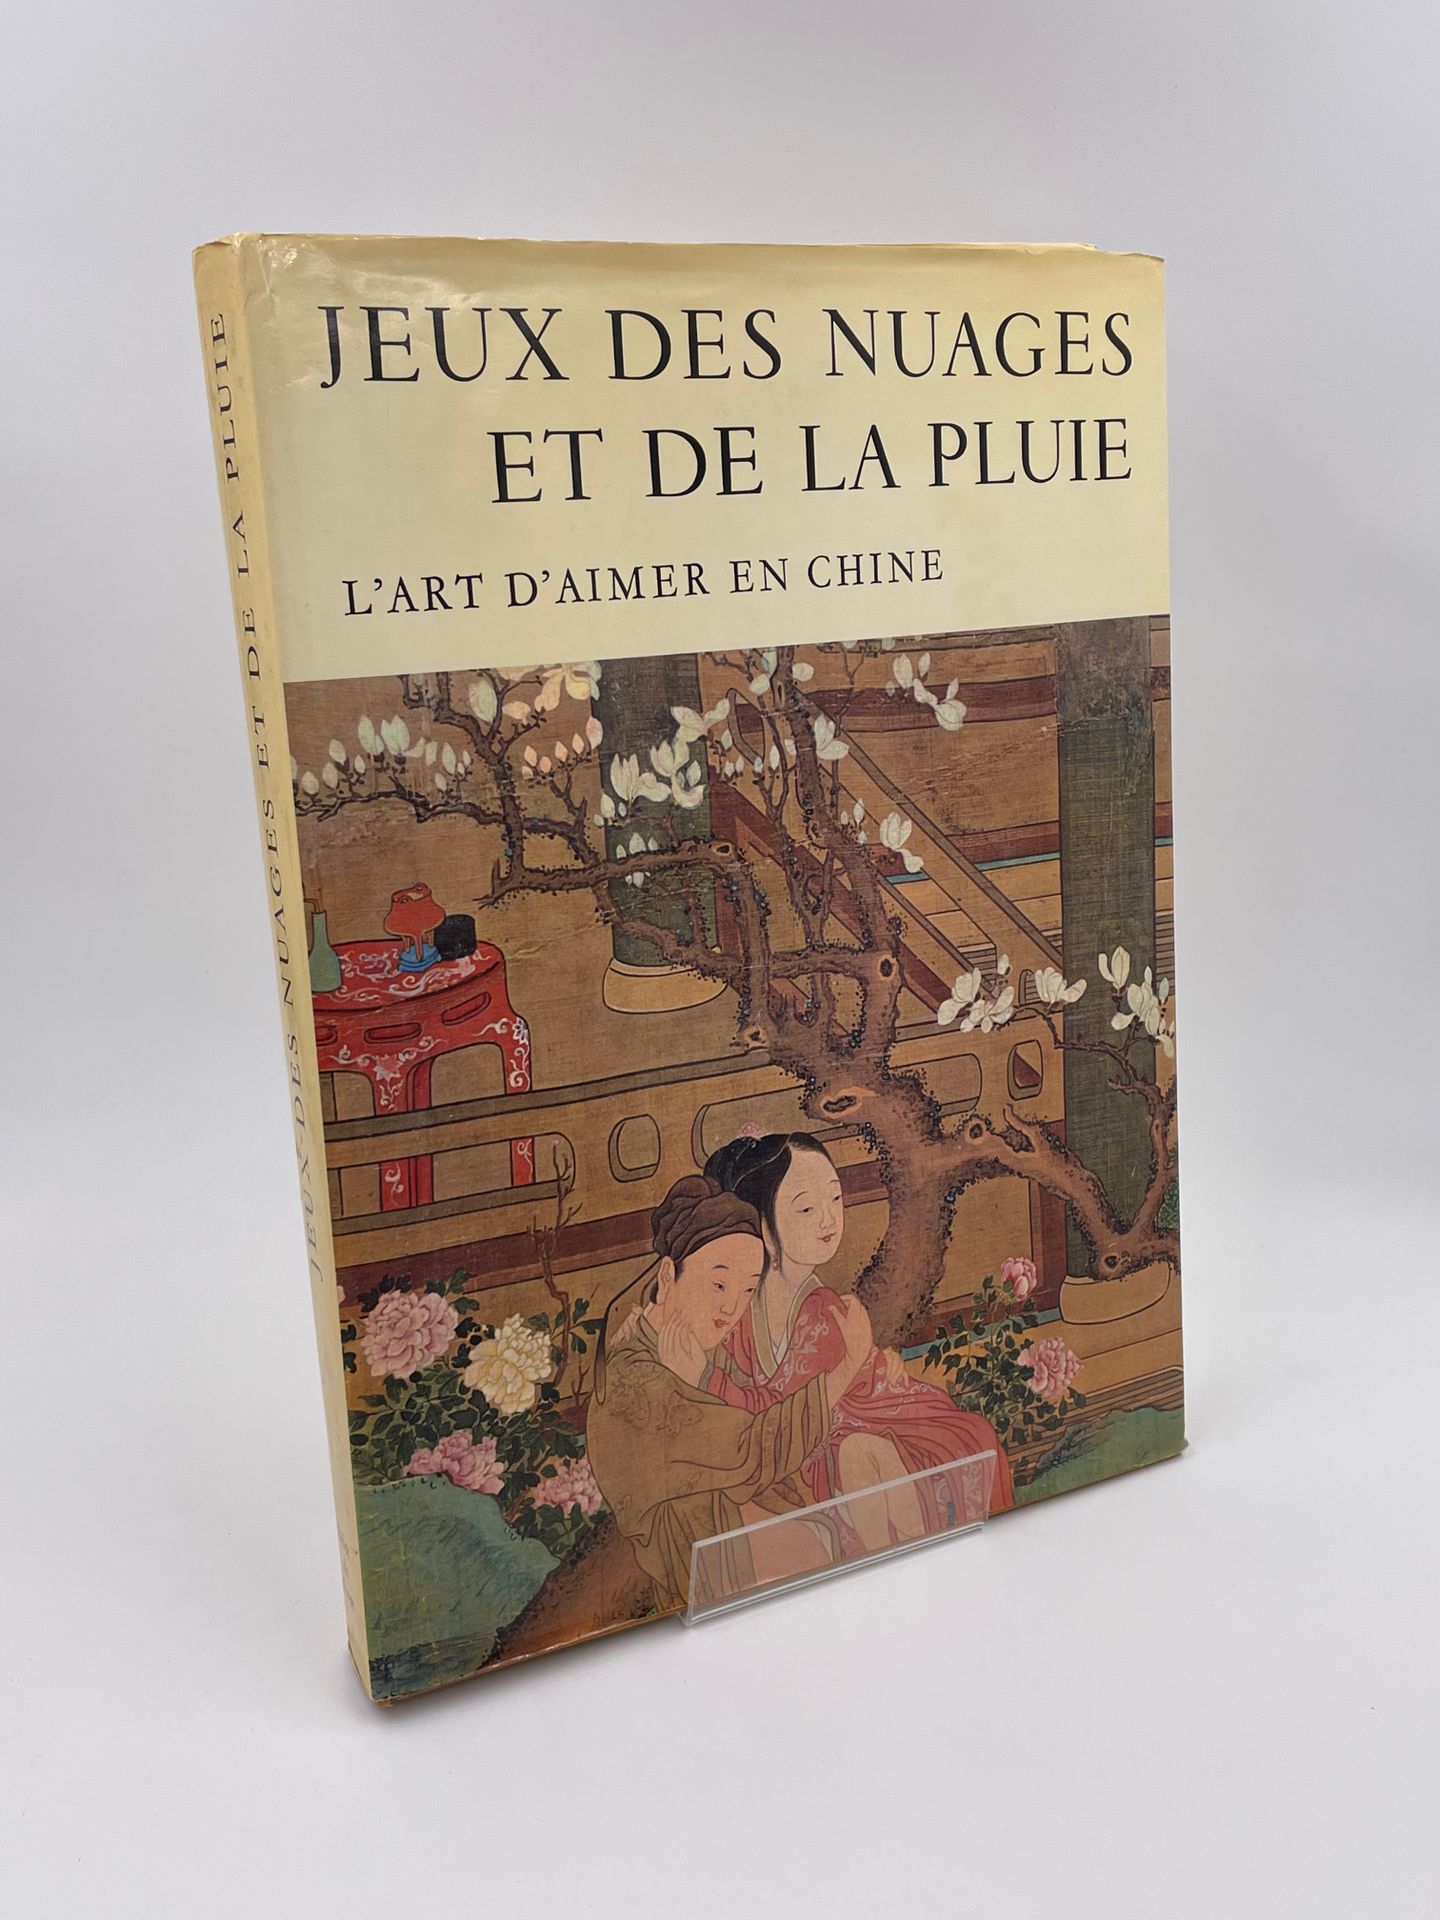 Null 1 Volume : "JEUX DES NUAGES ET DE LA PLUIE, L'ART D'AIMER EN CHINE" collect&hellip;